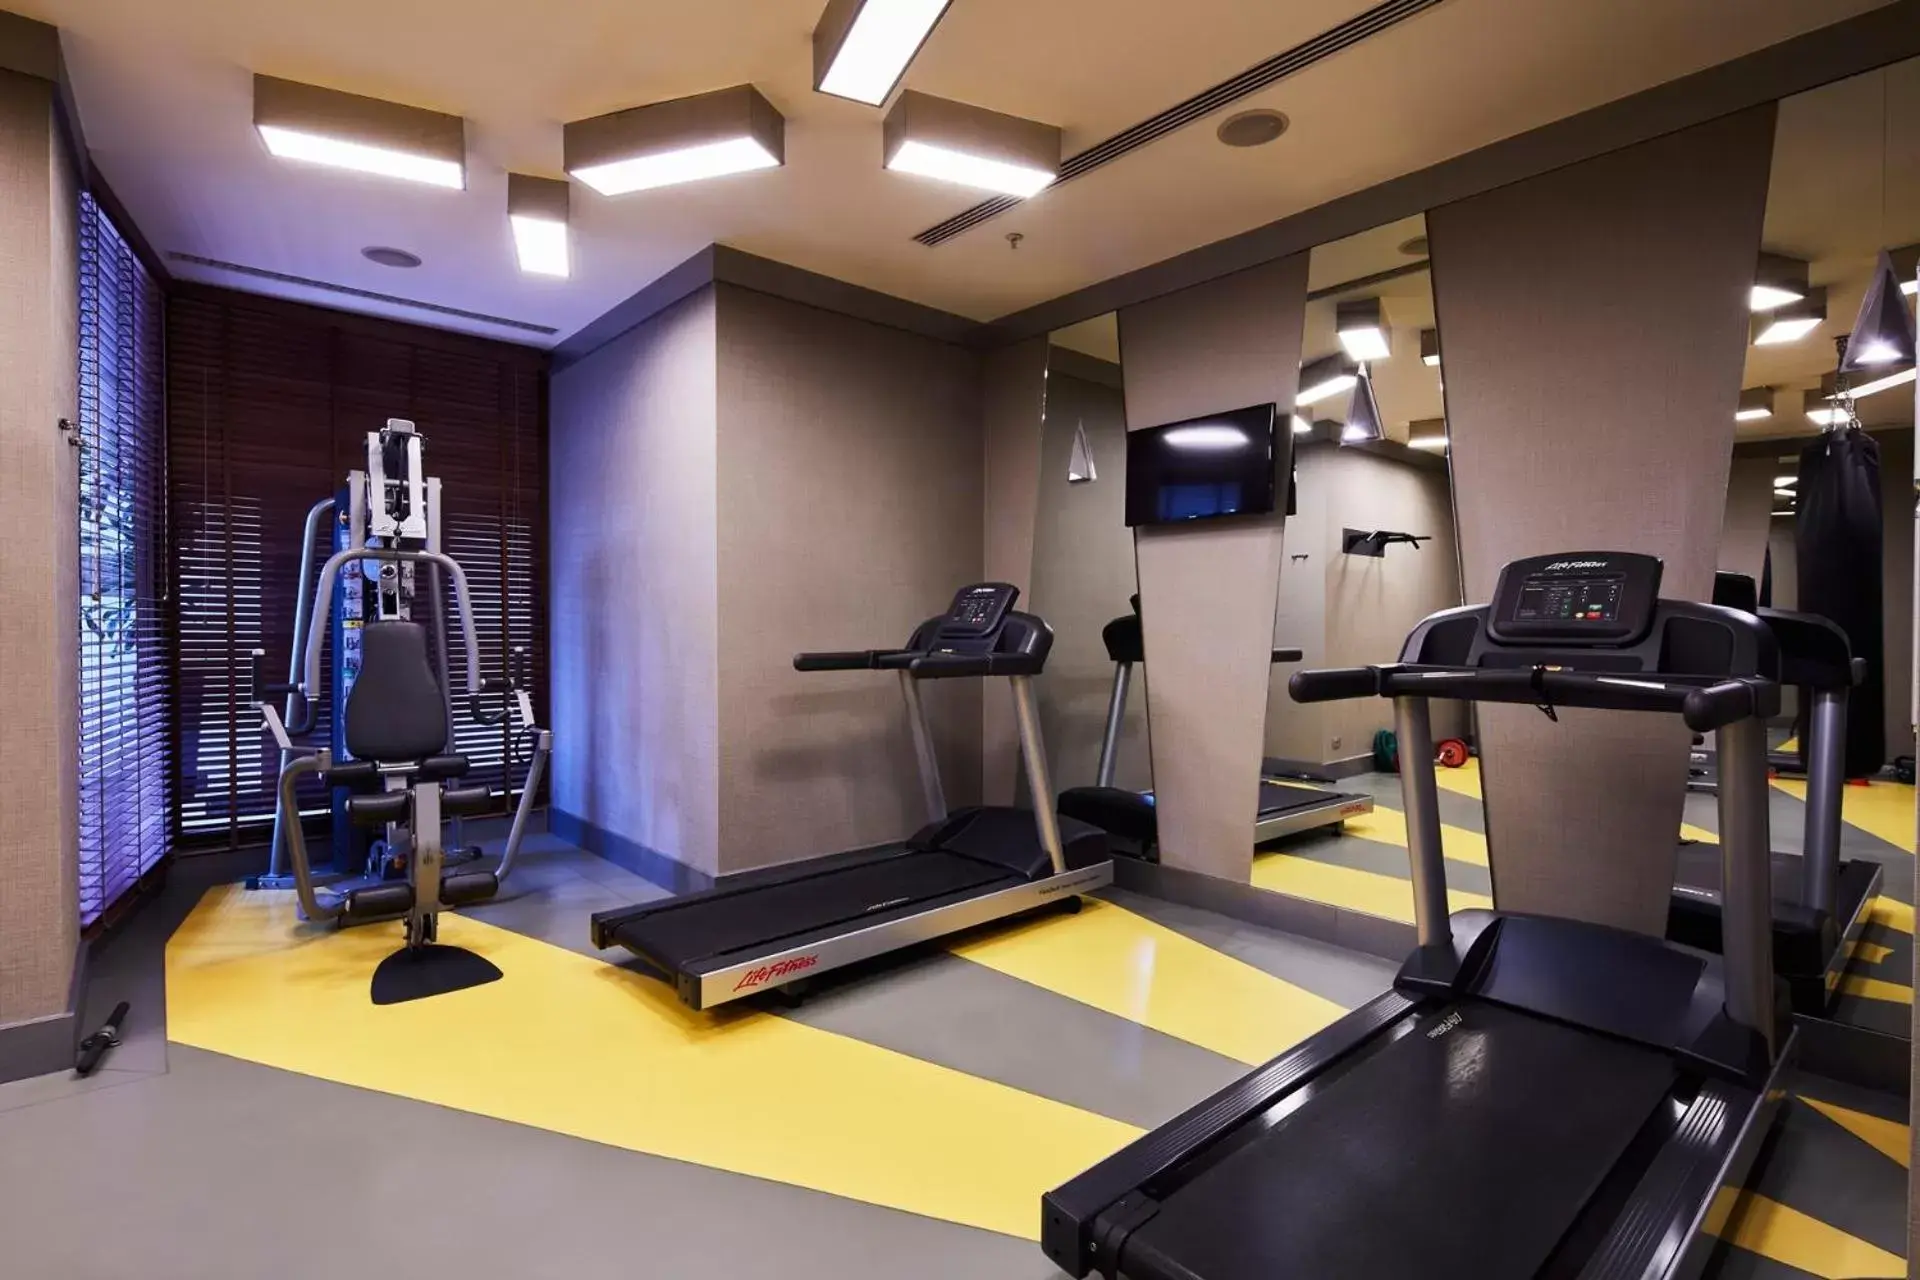 Fitness centre/facilities, Fitness Center/Facilities in Mövenpick Istanbul Hotel Golden Horn